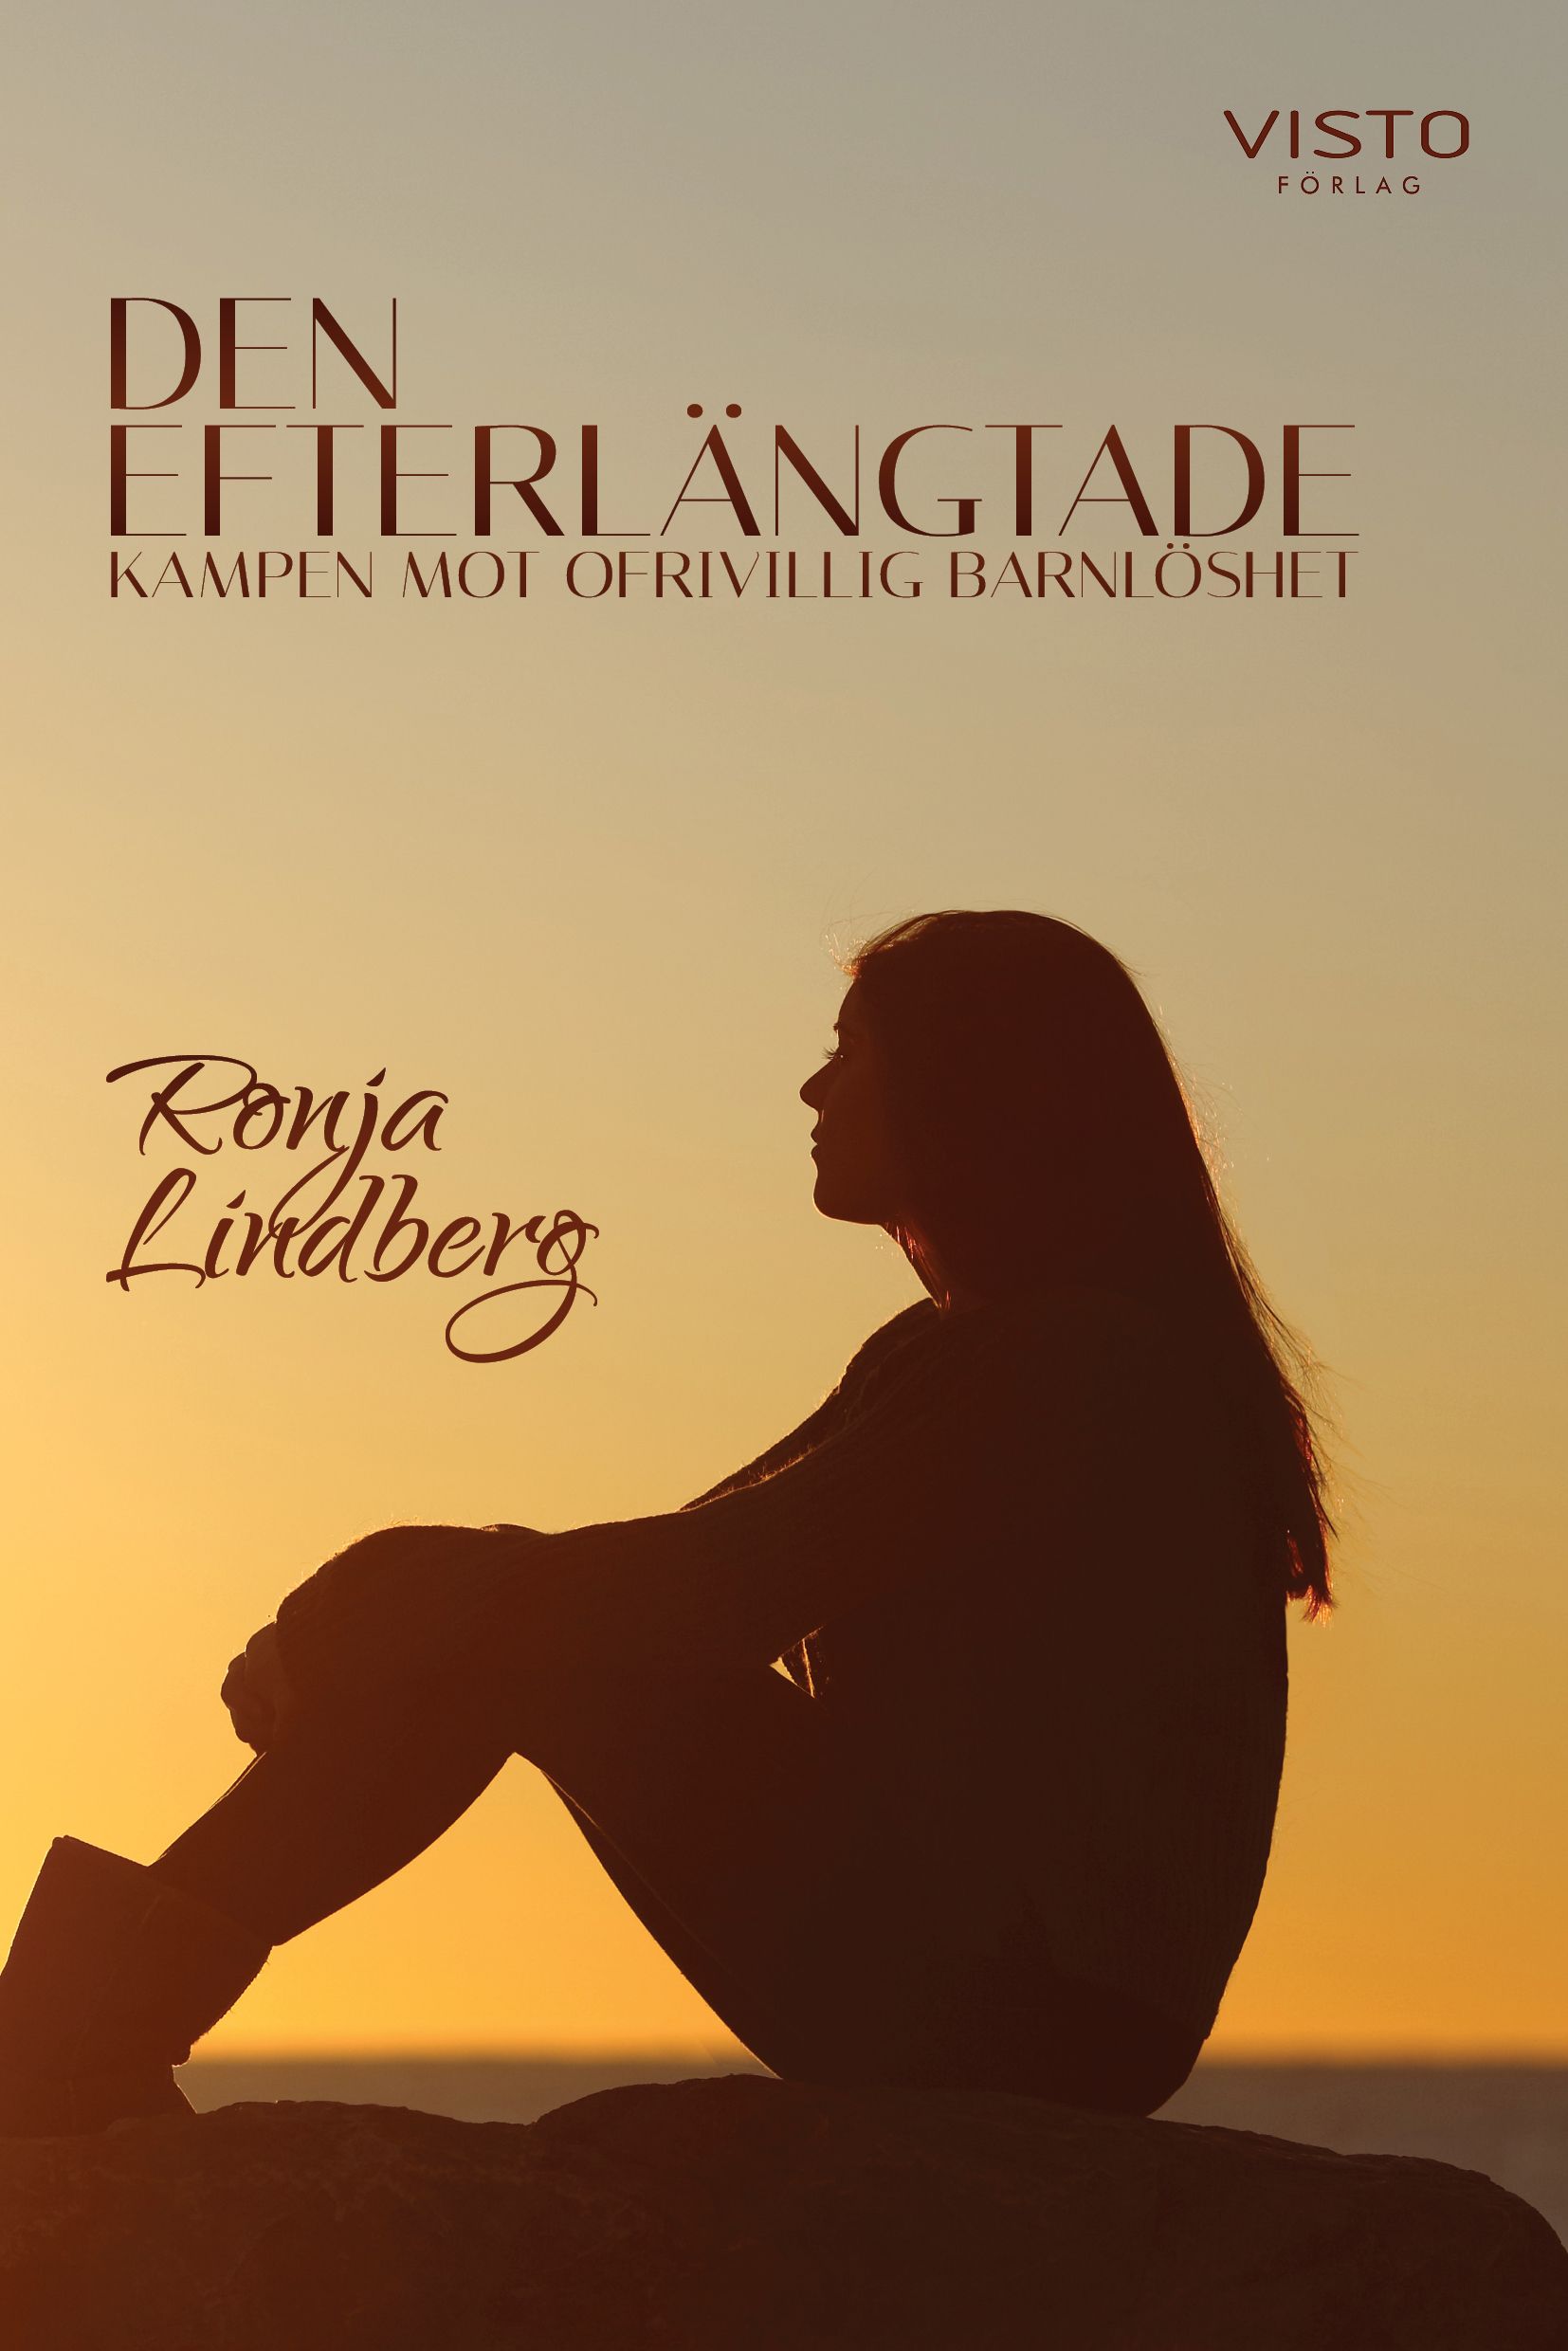 Den efterlängtade, kampen mot ofrivillig barnlöshet, eBook by Ronja Lindberg